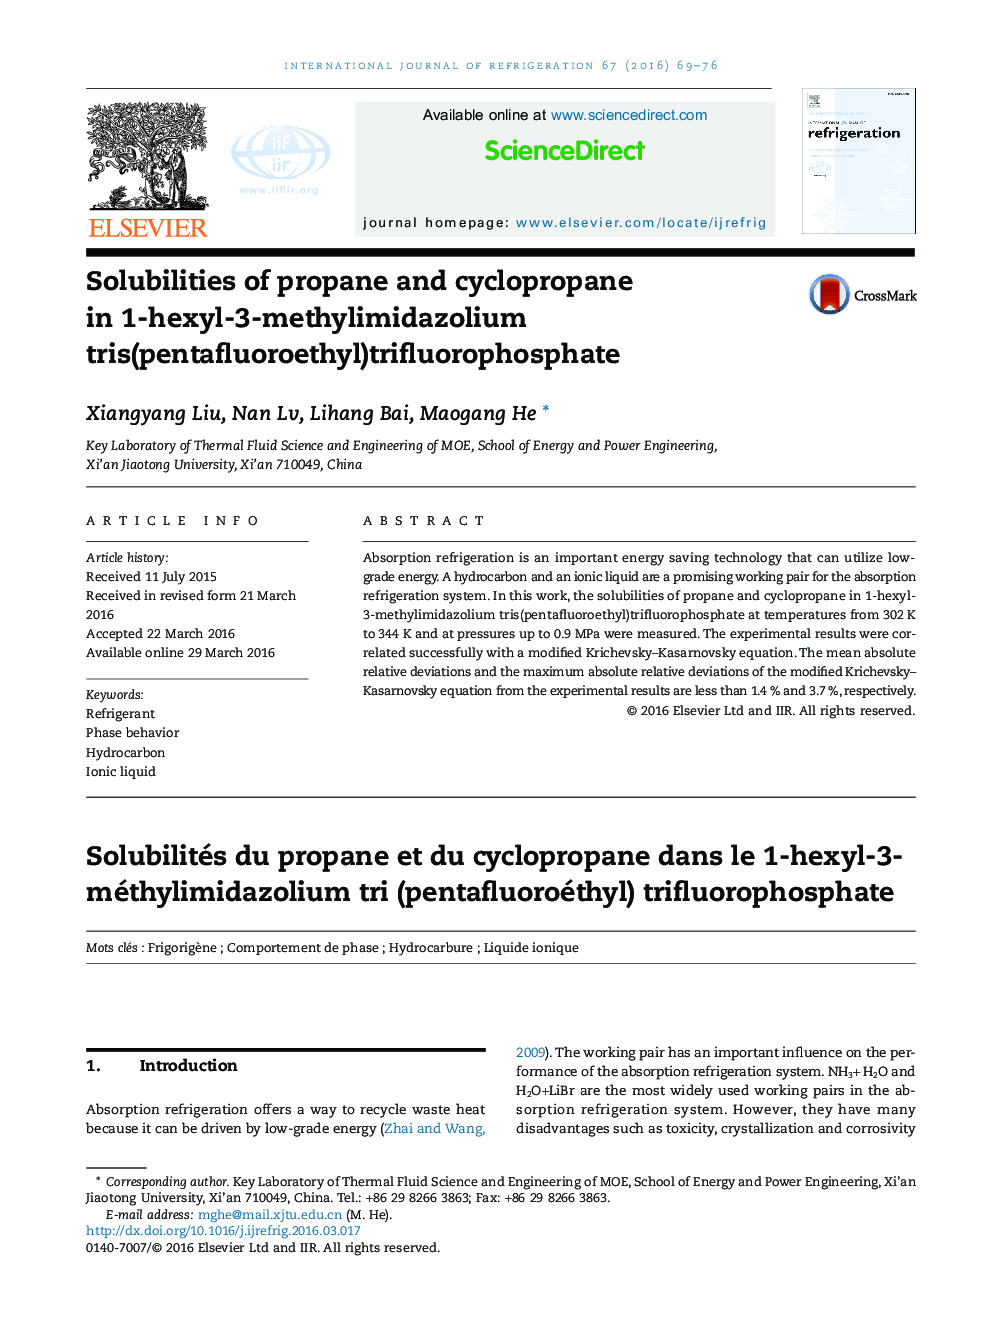 سازگاری پروپان و سیکلوپروپان در 1-هگزیل 3-methylimidazolium tris (pentafluoroethyl) trifluorophosphate